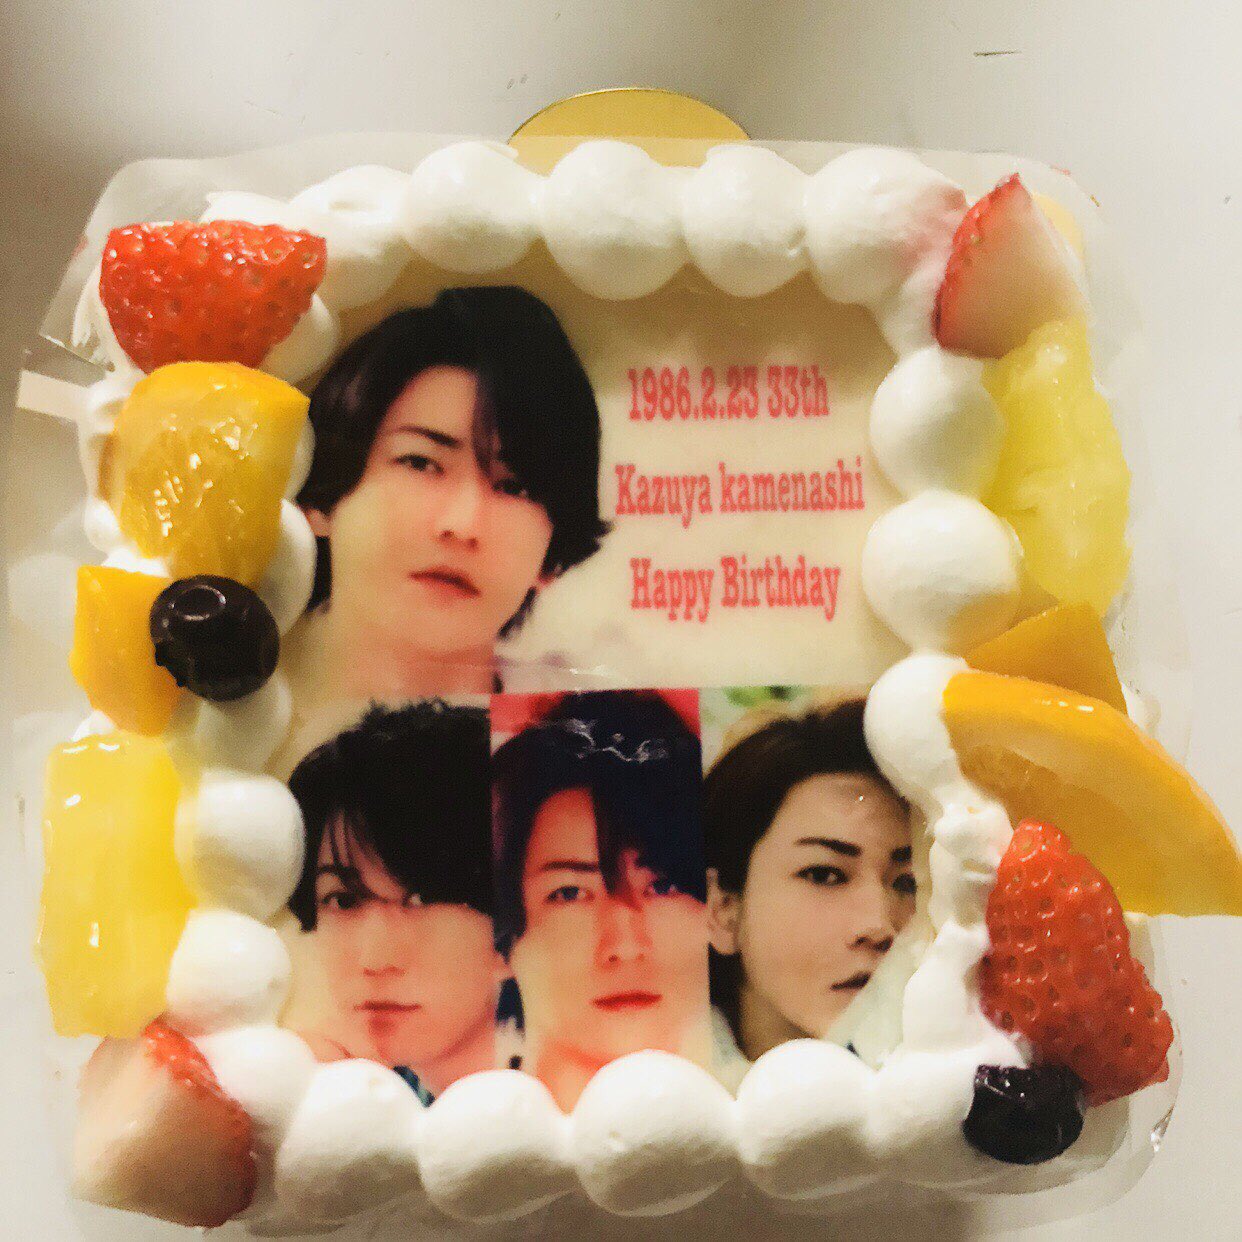 33th Kazuya kamenashi Happy Birthday    